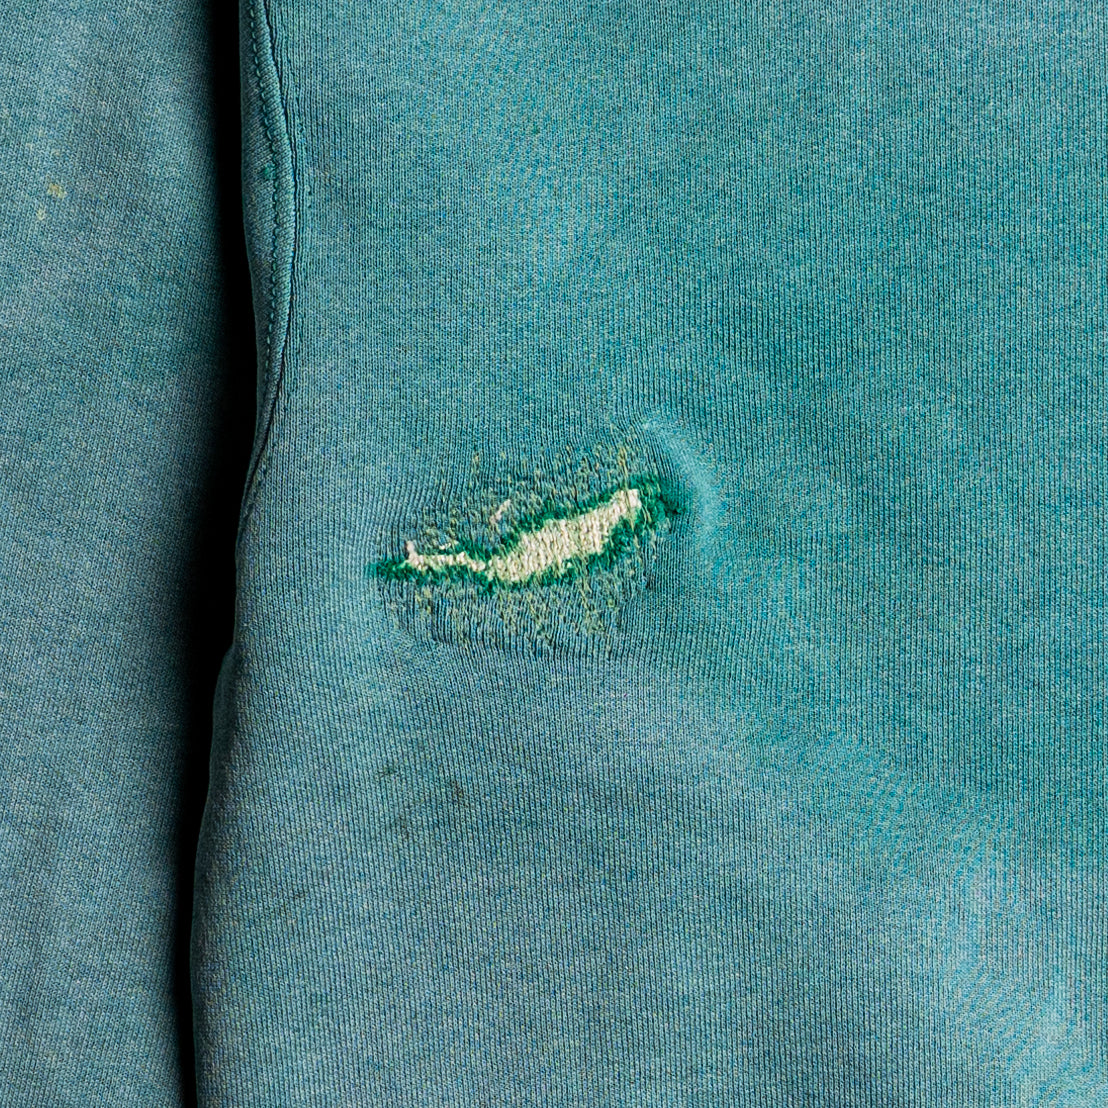 Repaired Blank BVD Sweatshirt - Details